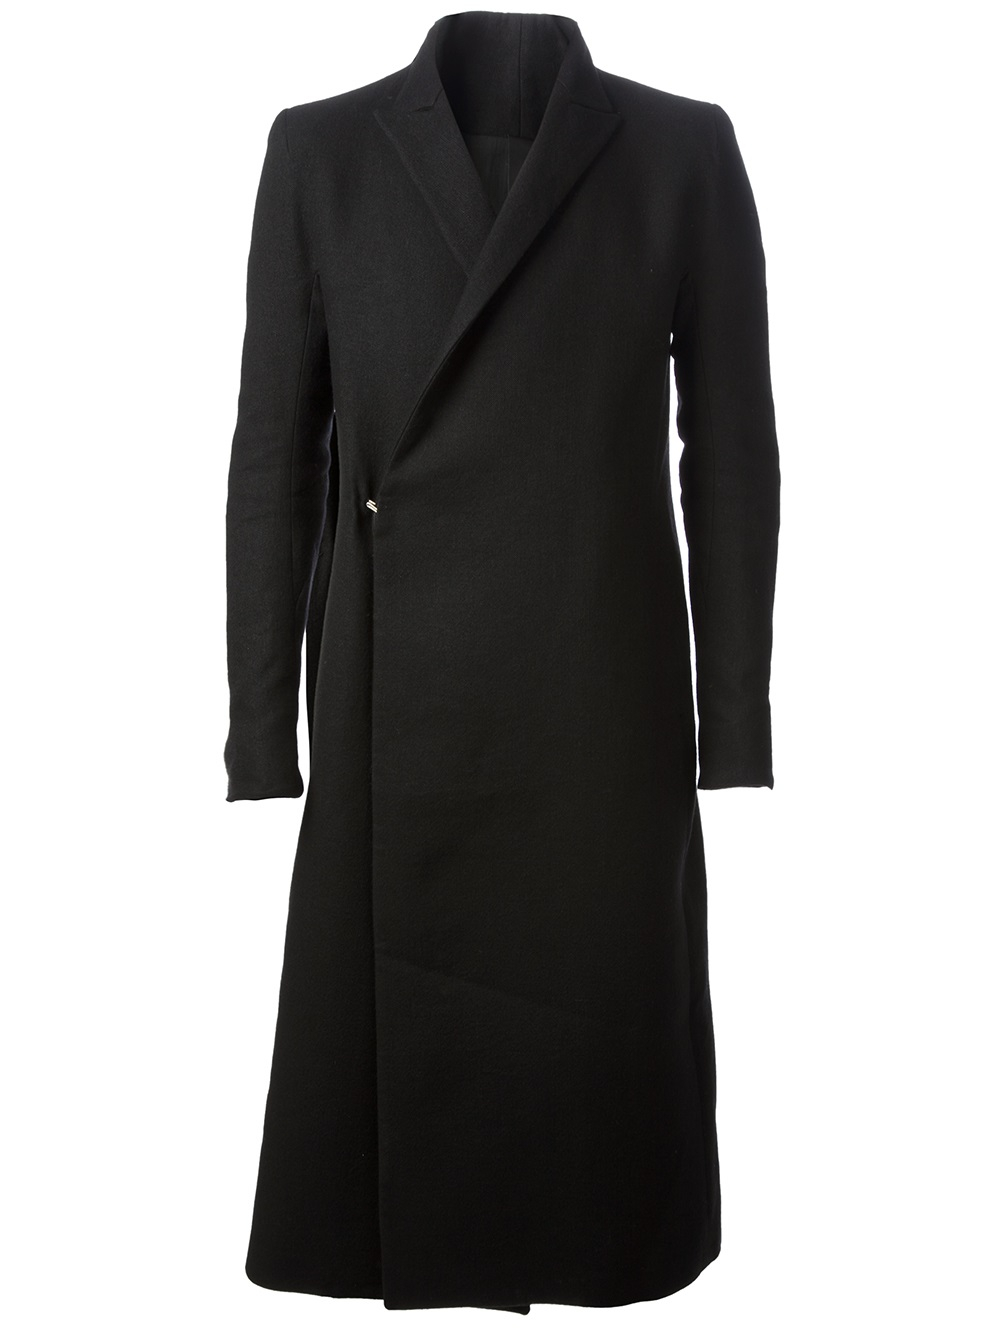 Lyst - Y. Project Long Wool-Blend Coat in Black for Men